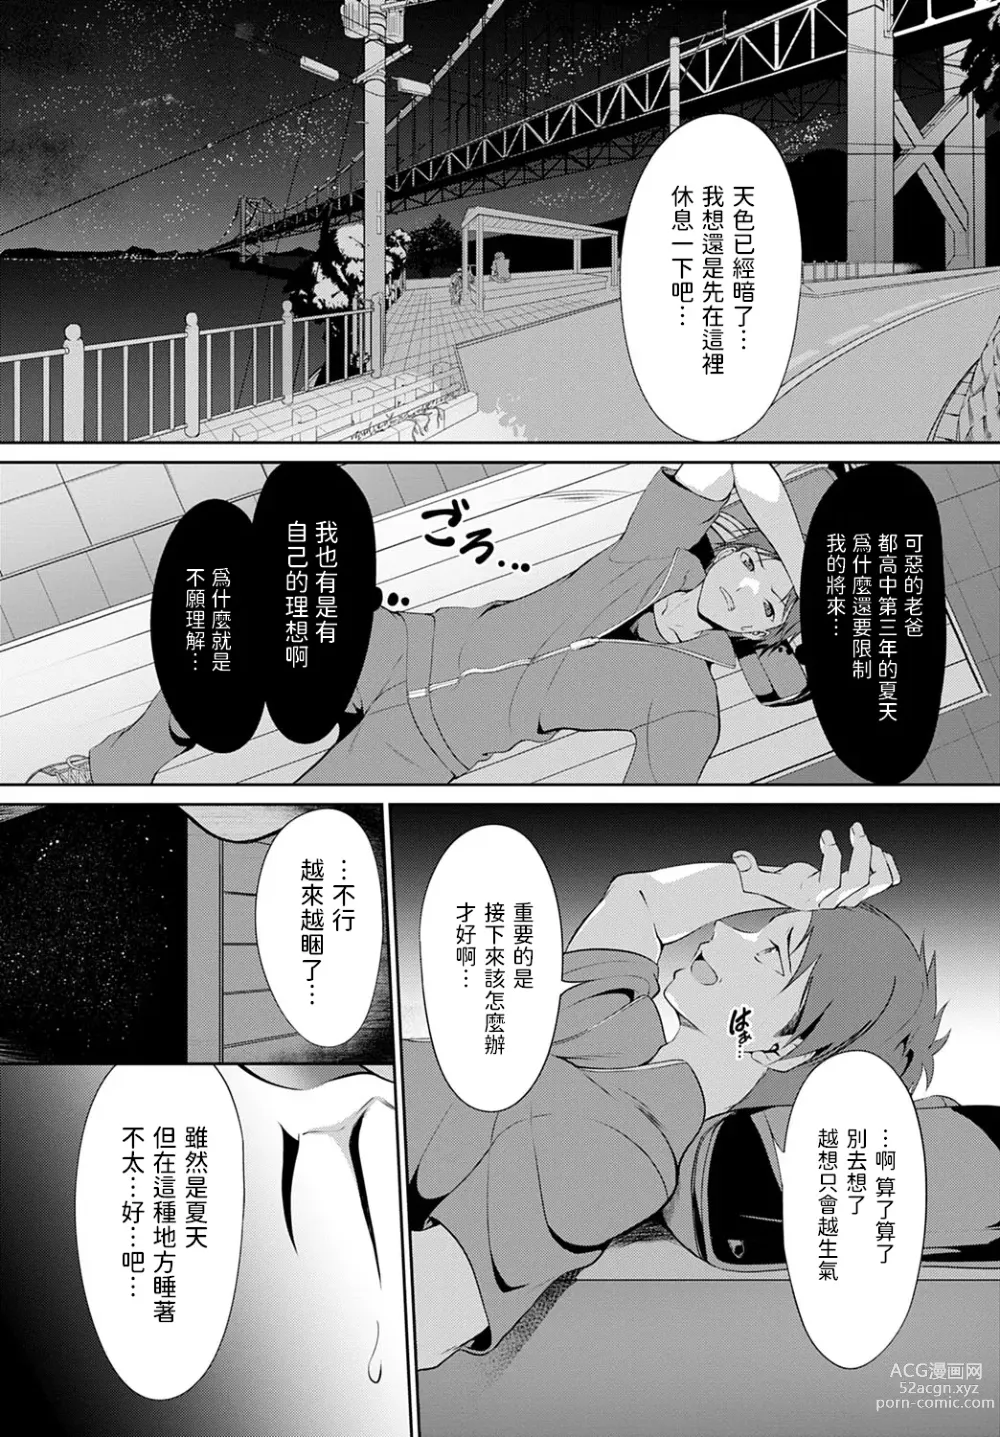 Page 2 of manga Kega shita Tsubame o Mitsuketara.